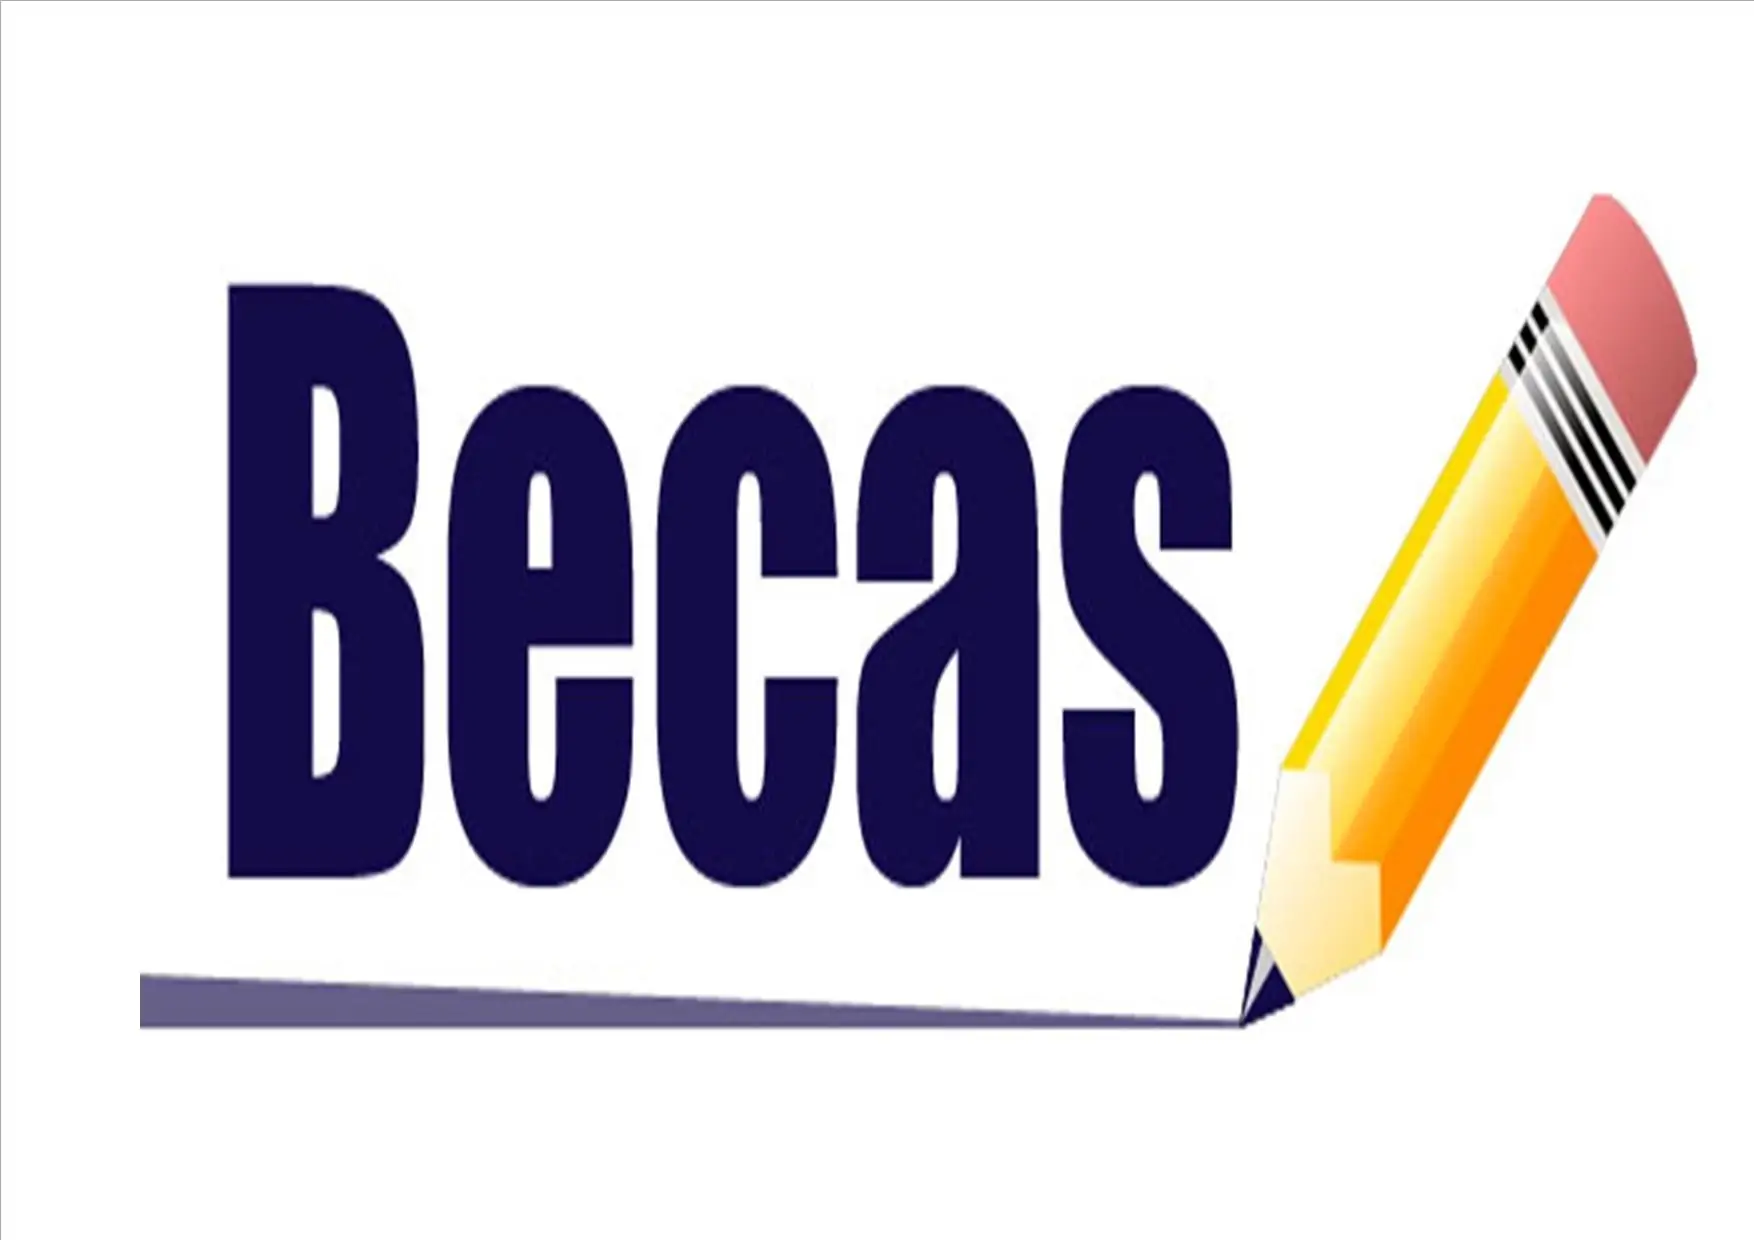 Becas24